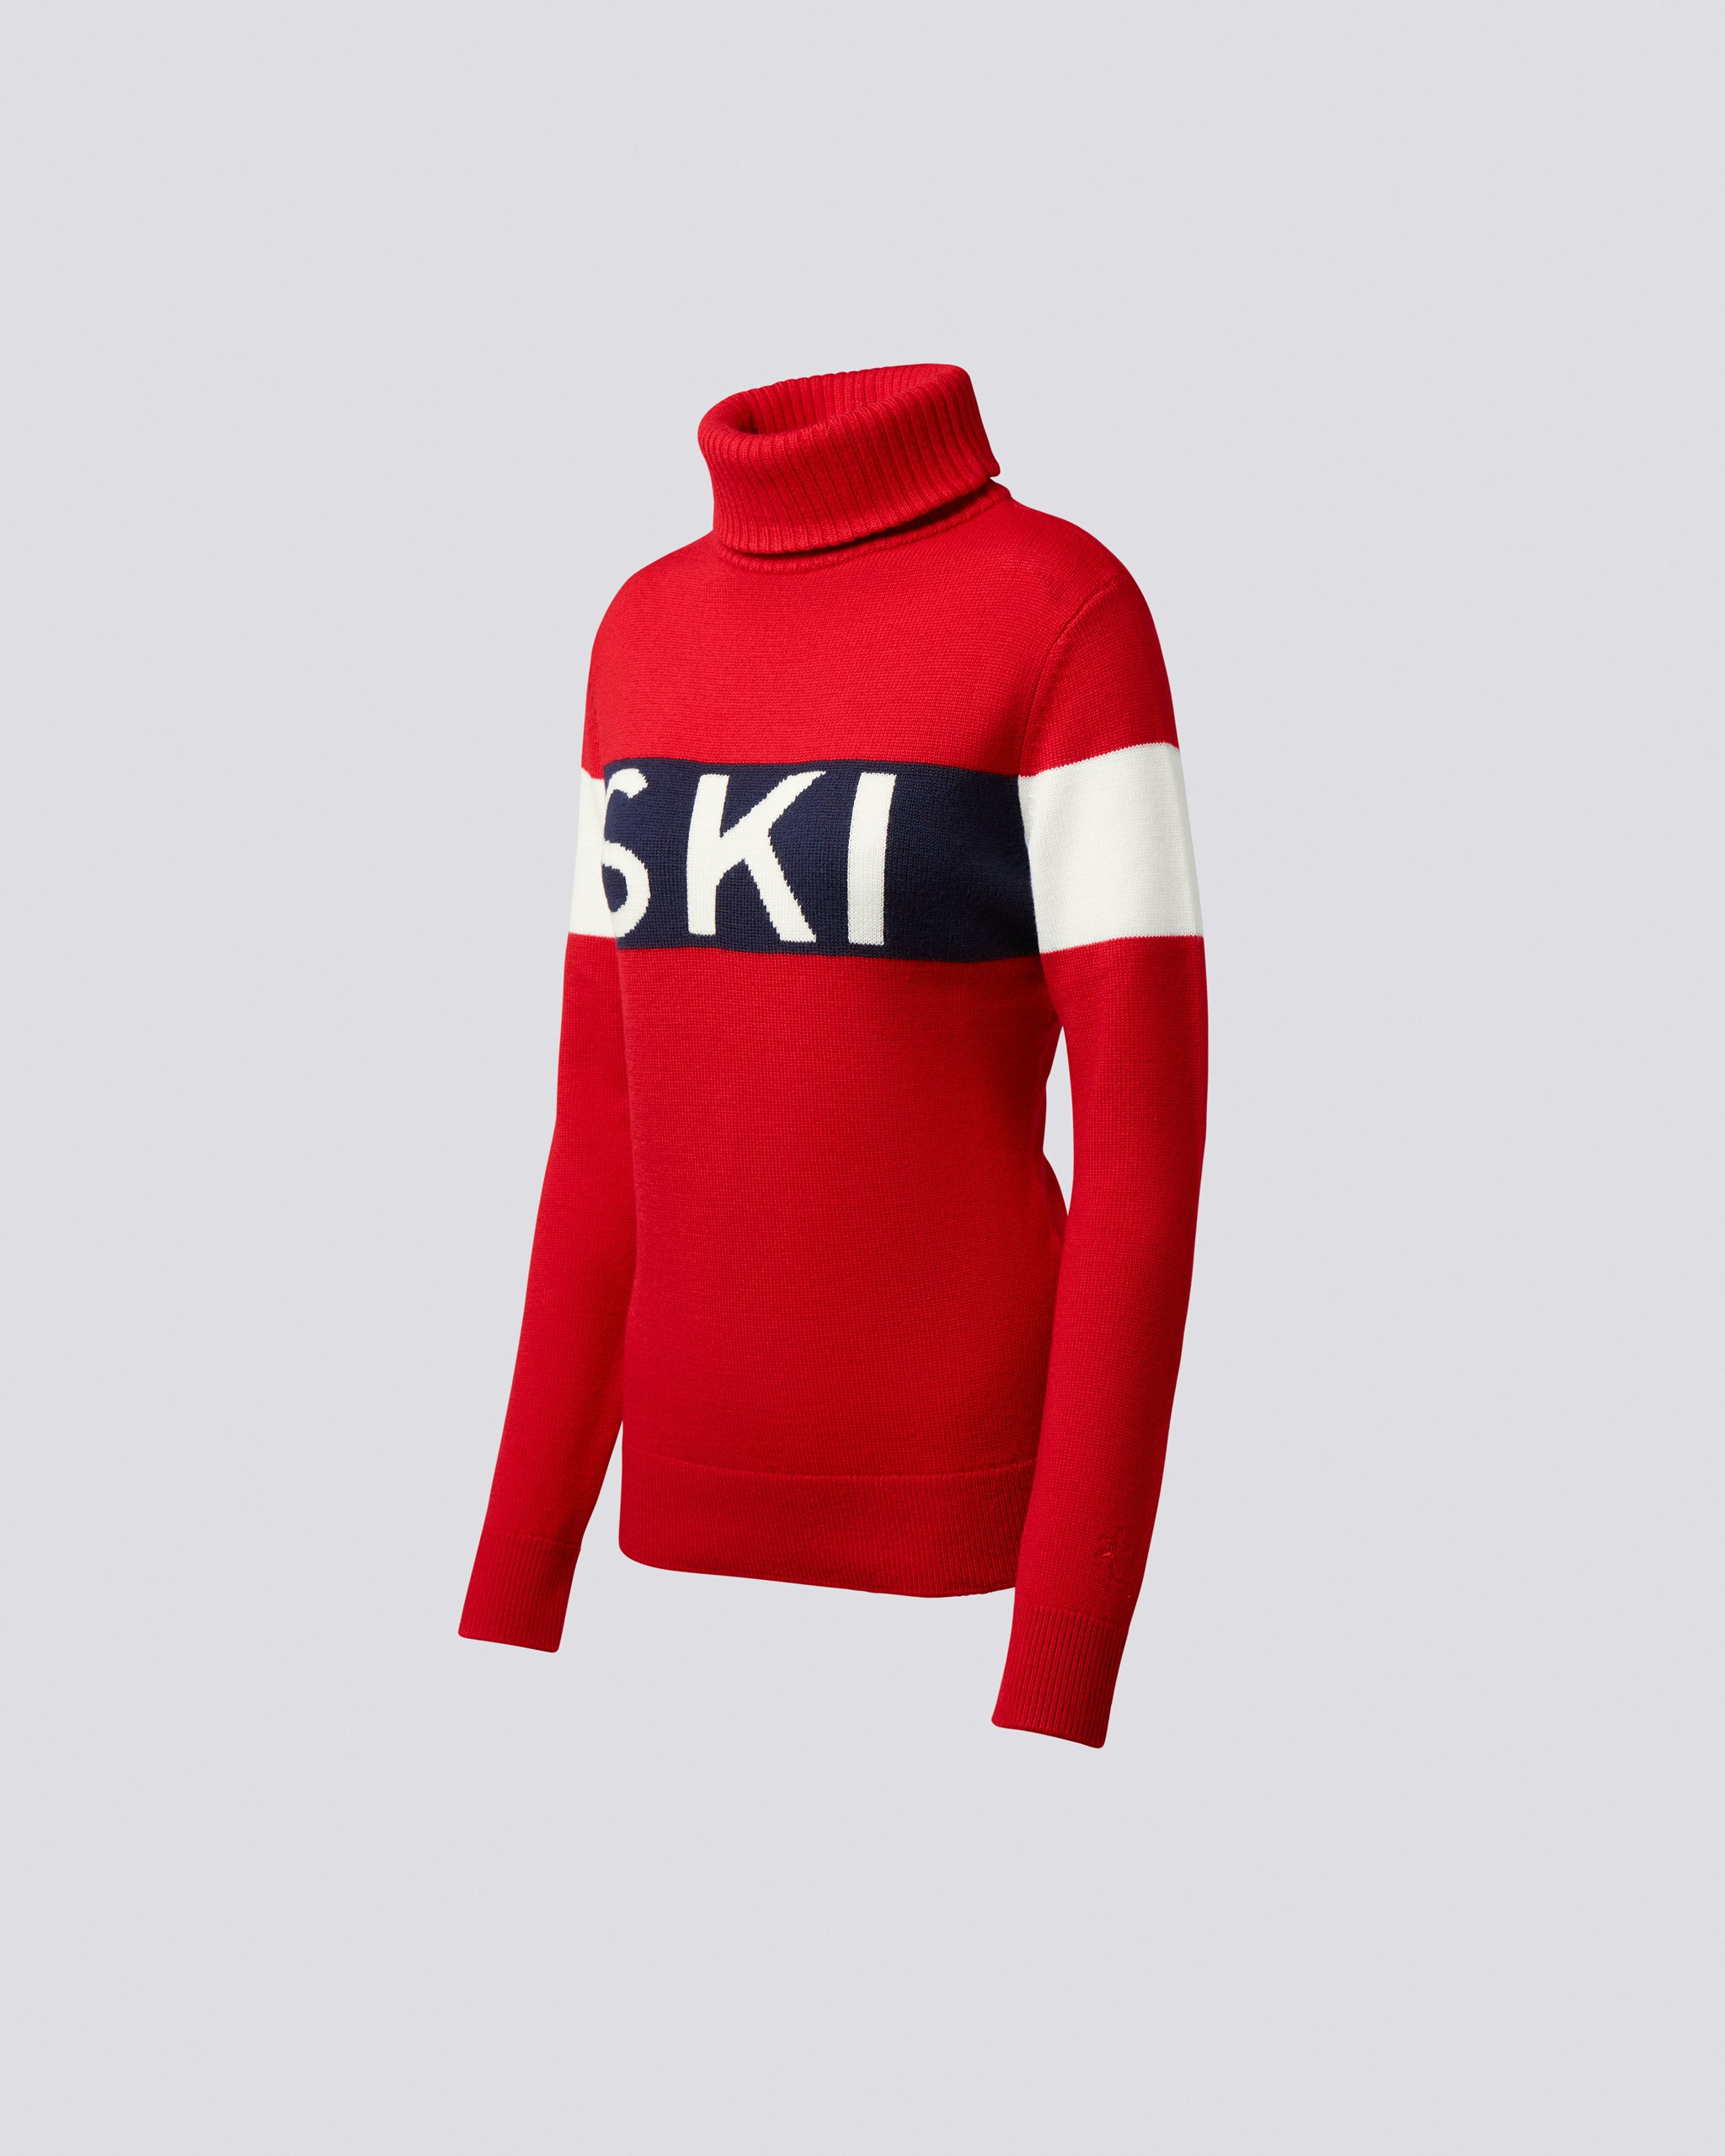 Ski Sweater II